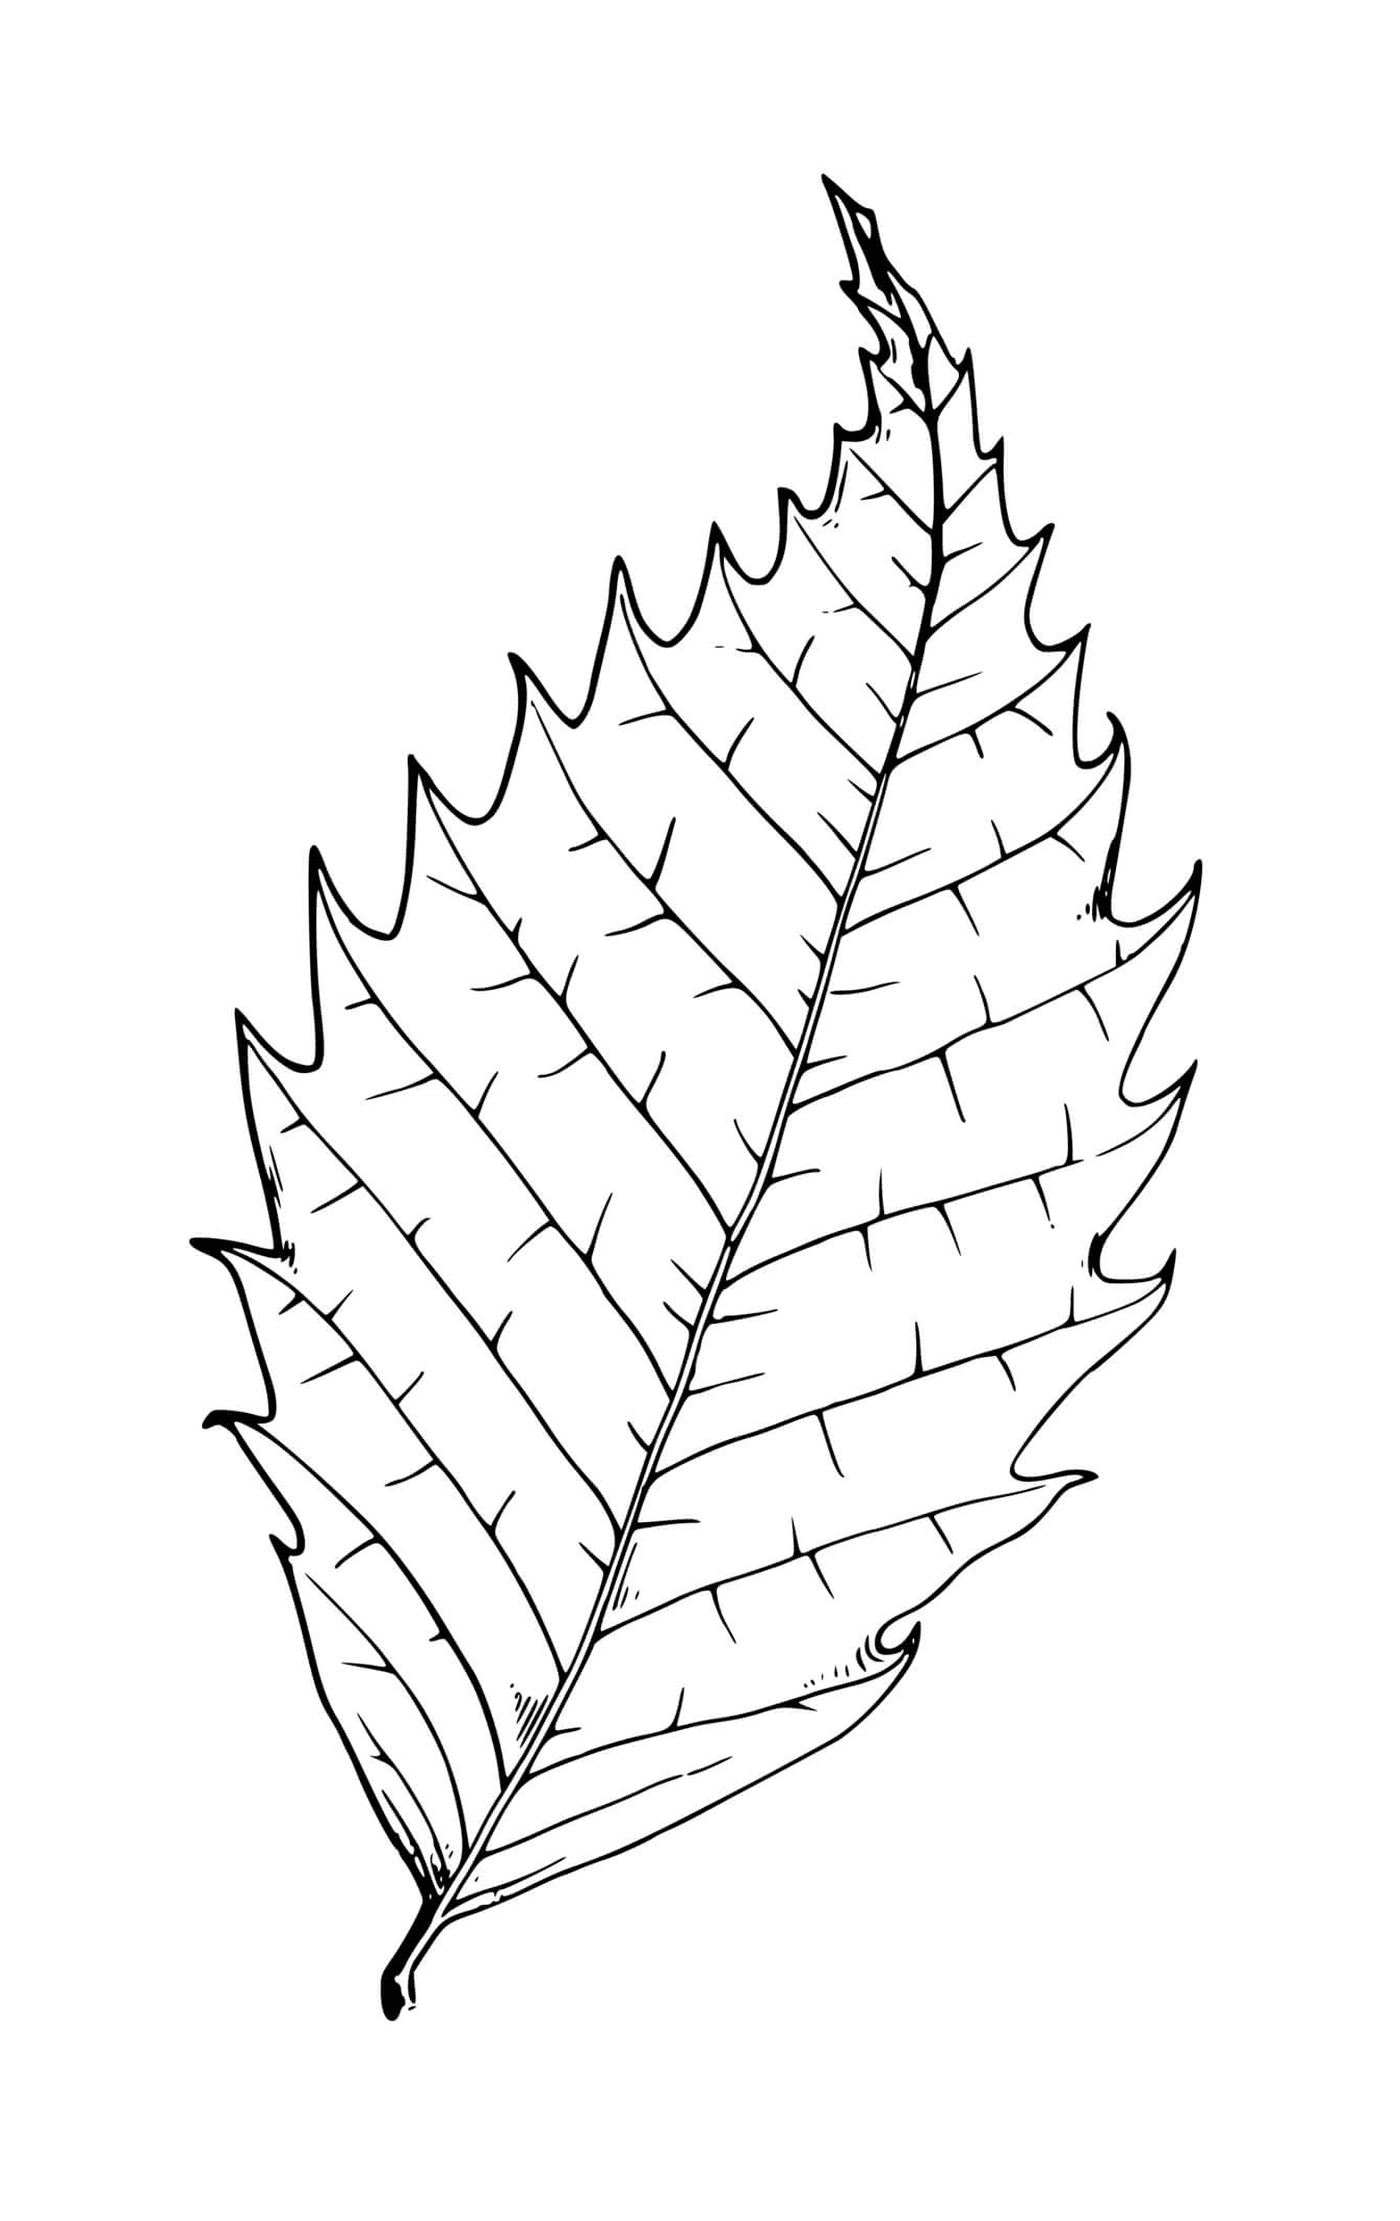  Beech tree leaf 